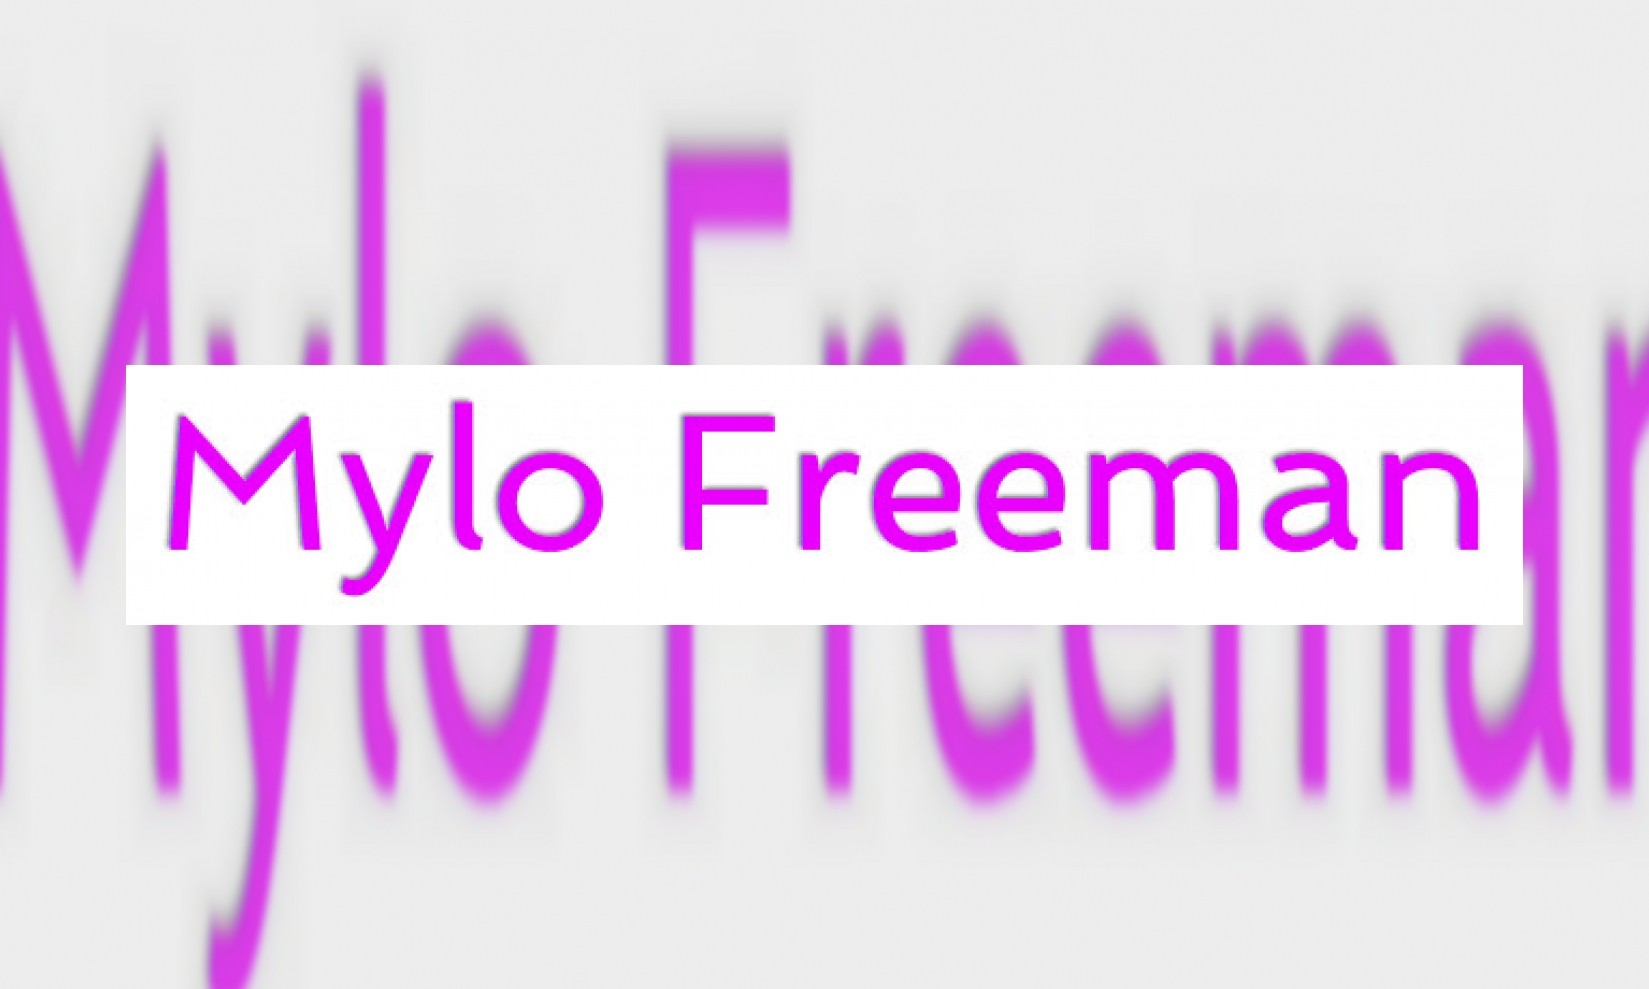 Mylo Freeman